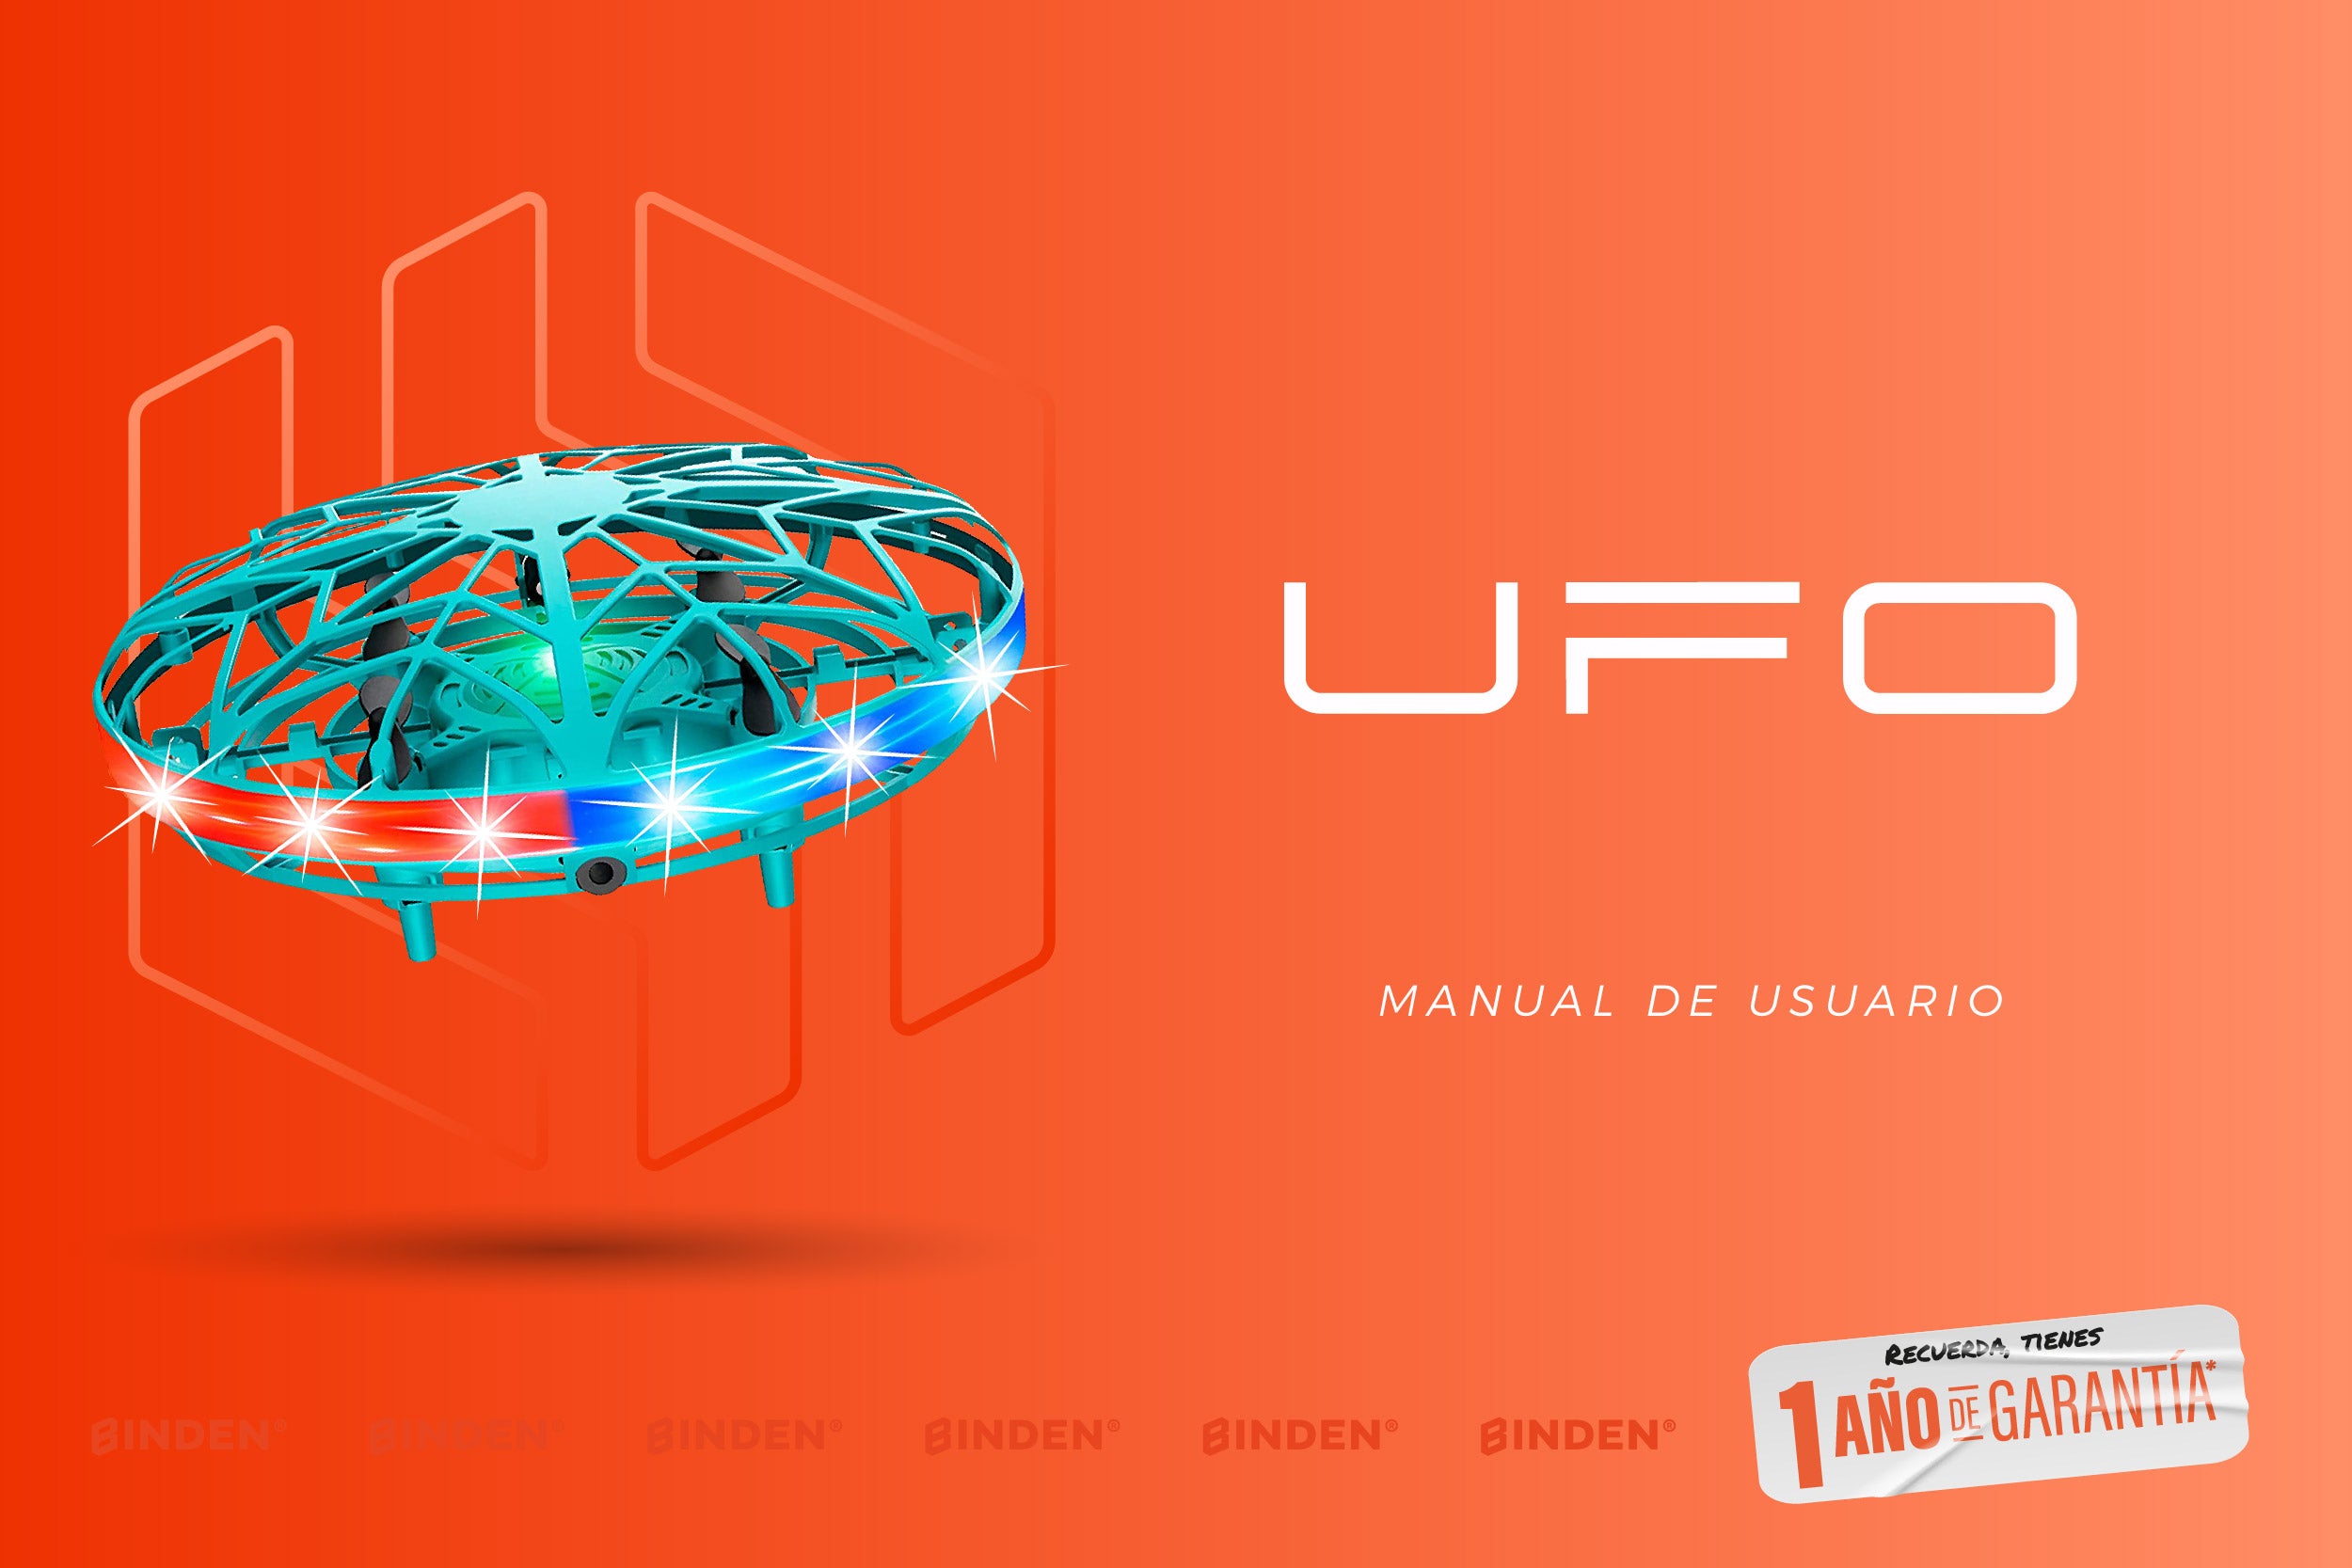 Manual de usario: Drone UFO - BINDEN